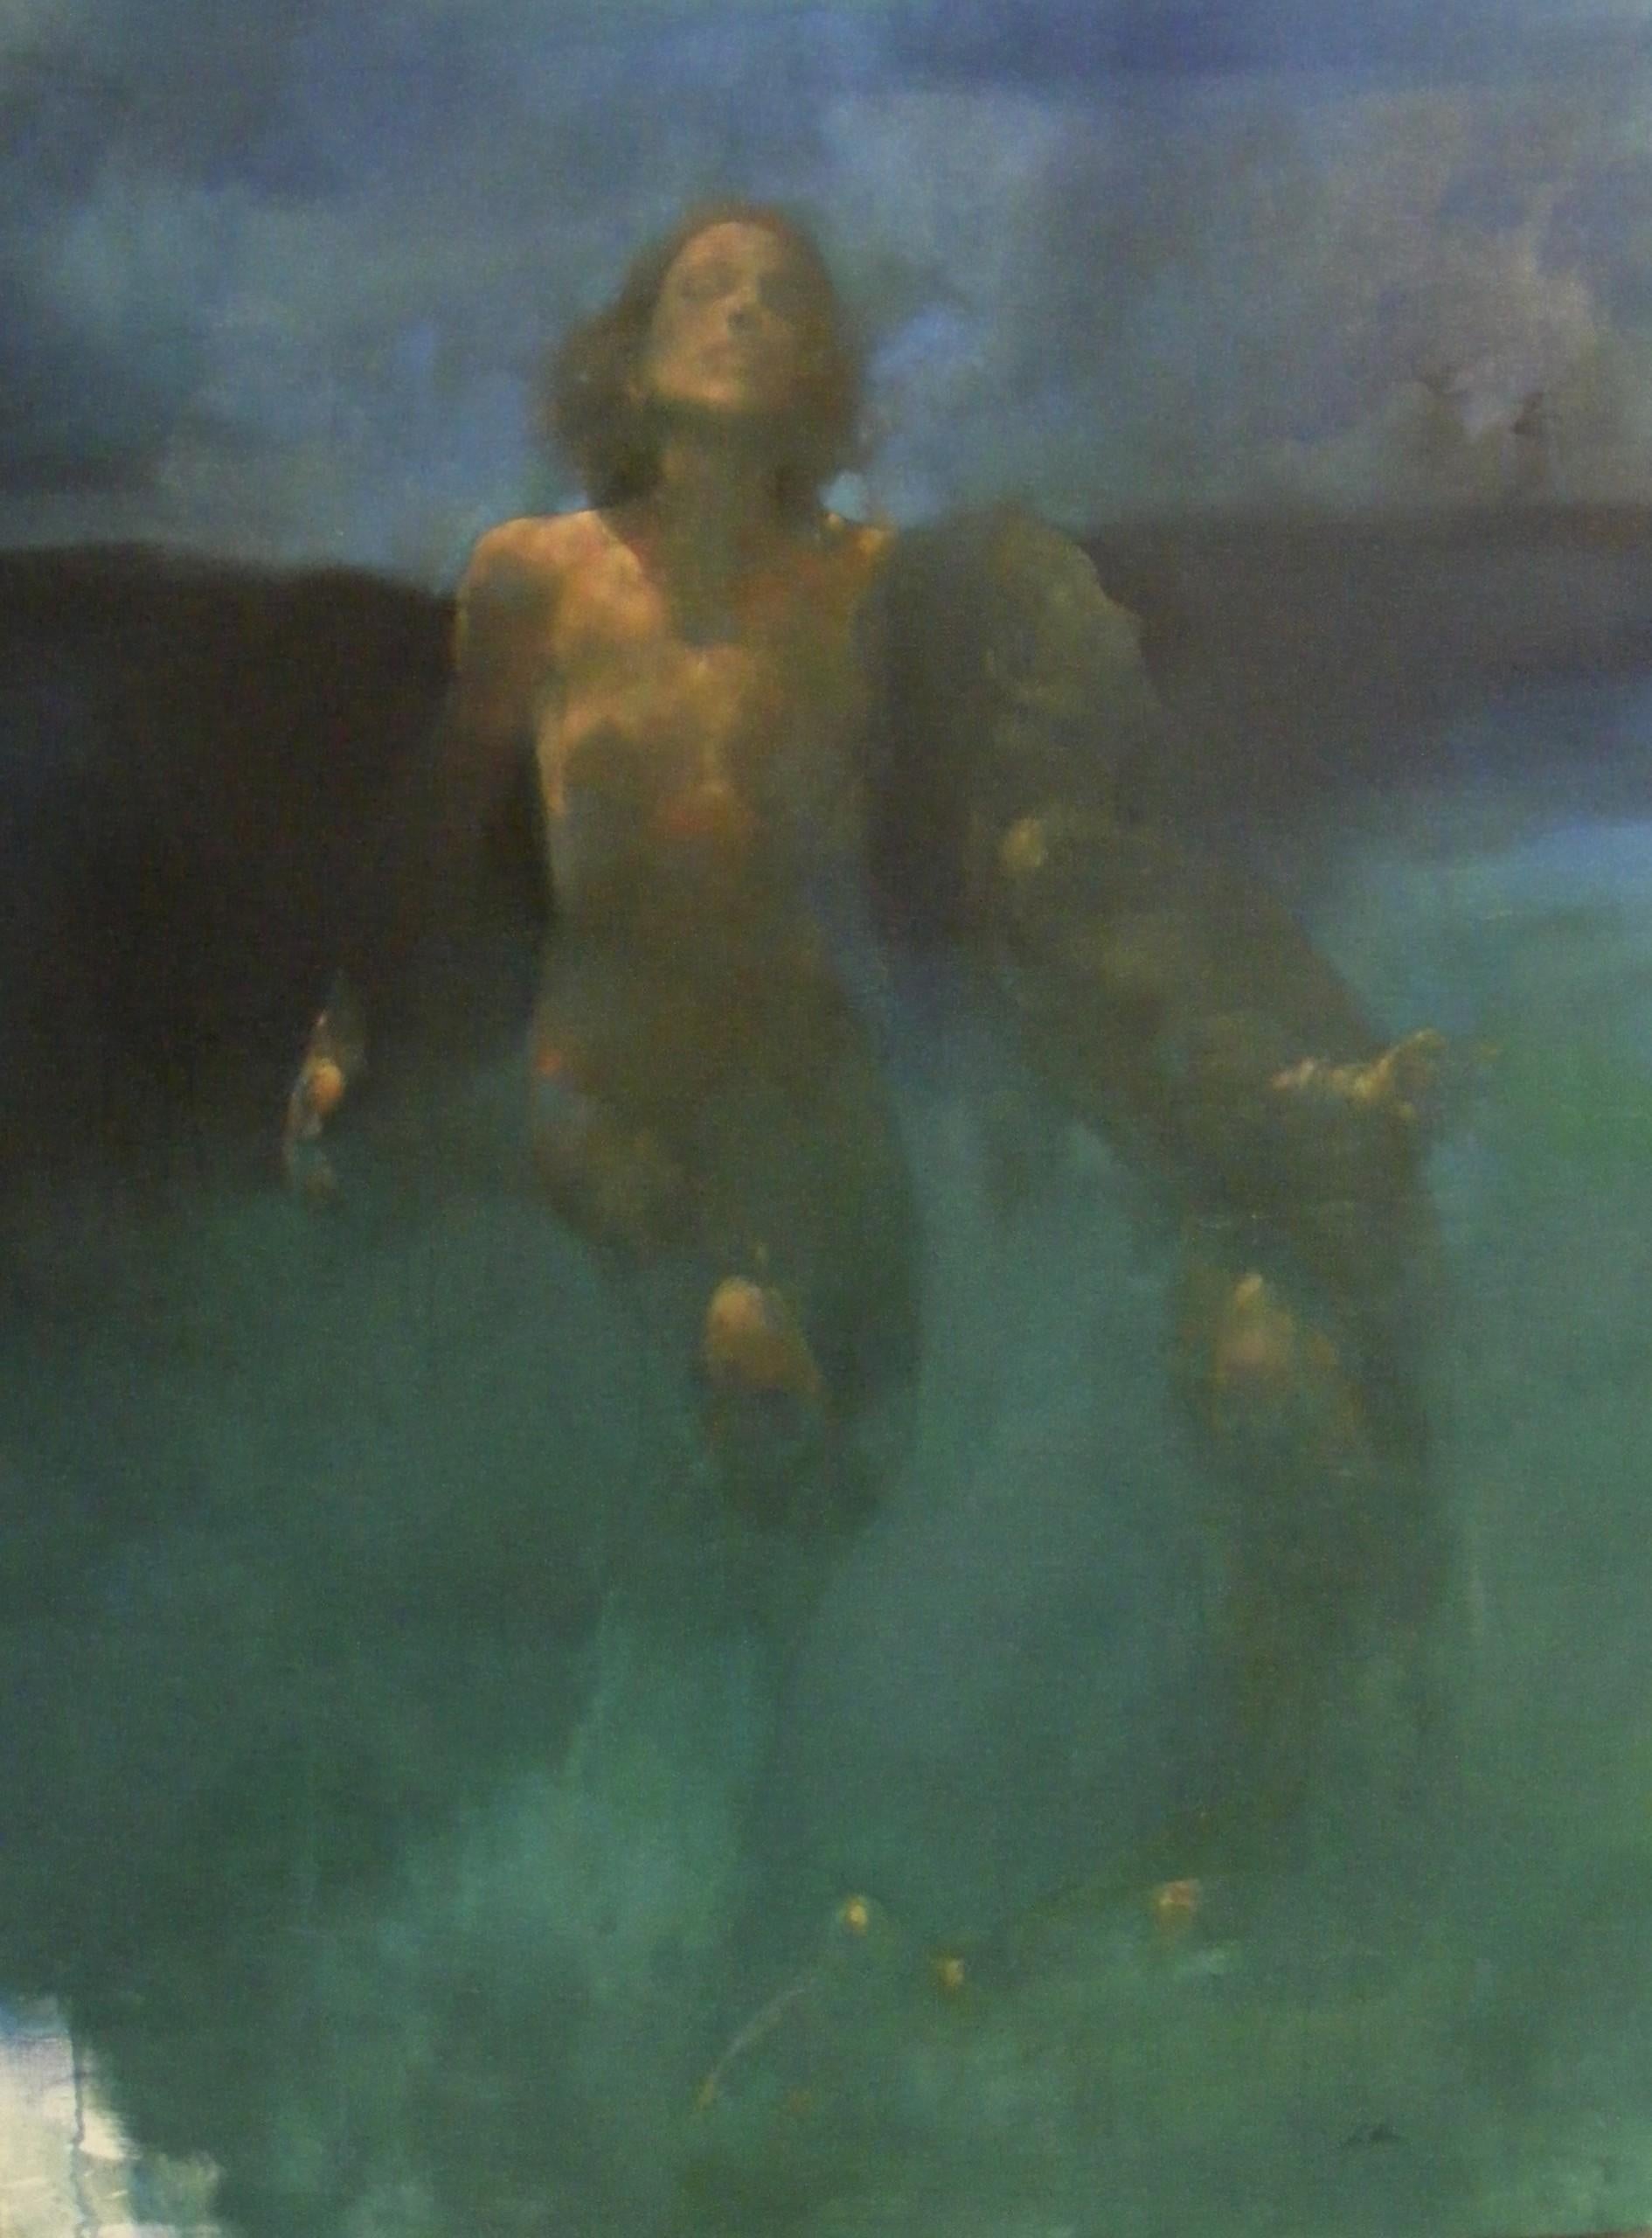 Morphosis II" wurde von dem Künstler Bill Bate mit Ölfarbe auf Leinwand gemalt.

Dieses Gemälde war ursprünglich eine einzelne Figur, wurde aber stark überarbeitet und entwickelte sich zu einer Szene, die zwei Körper zeigt. Die Betonung liegt auf